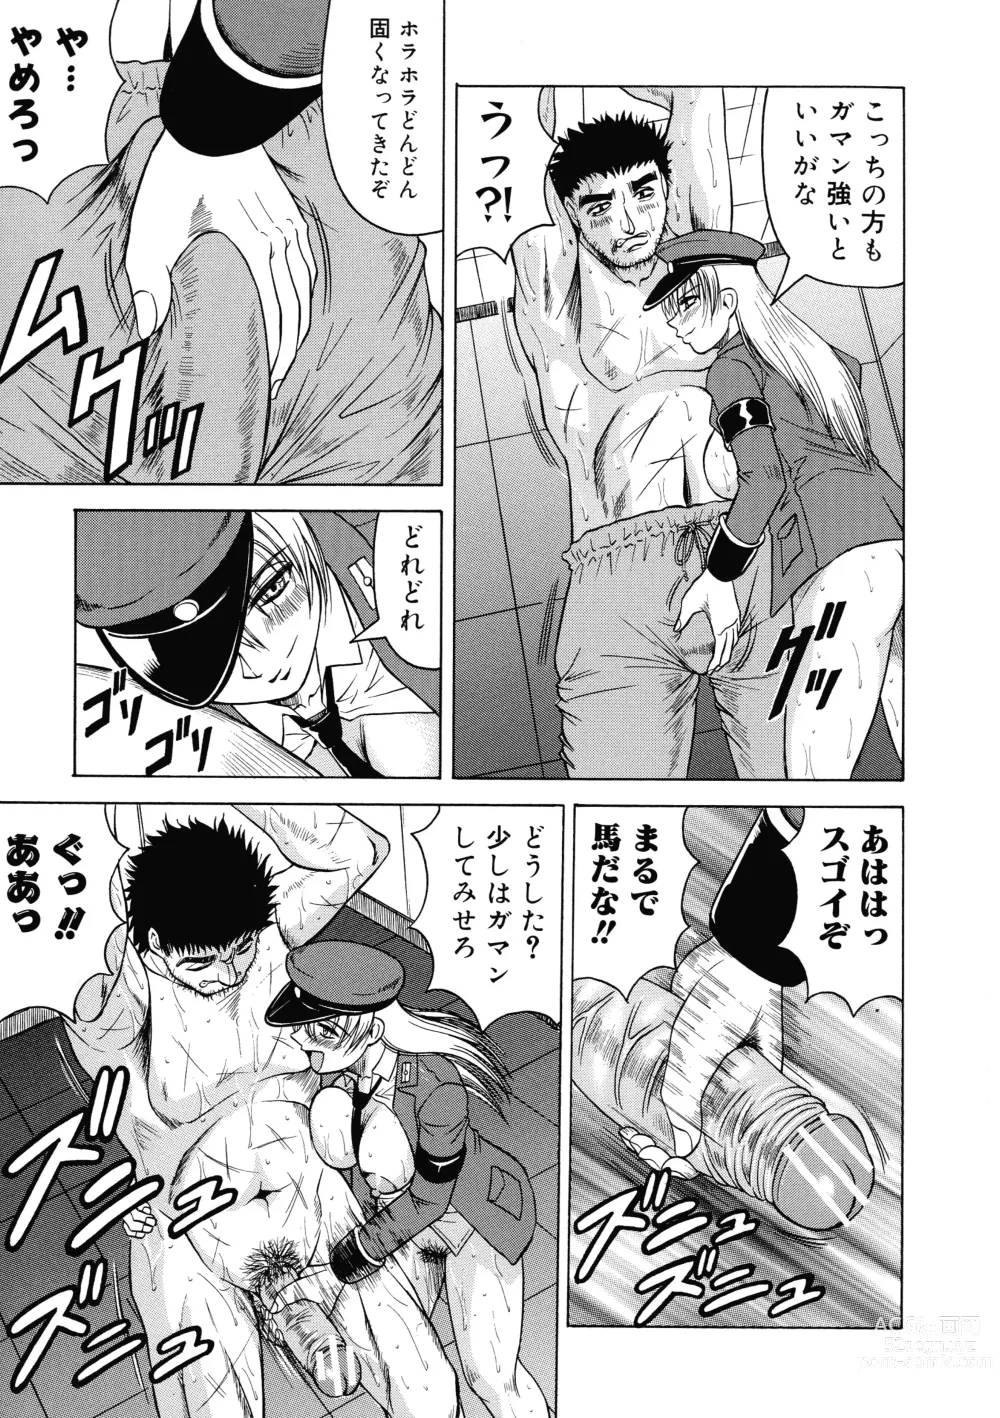 Page 153 of manga Ichigeki Nousatsu Satsuki-sensei